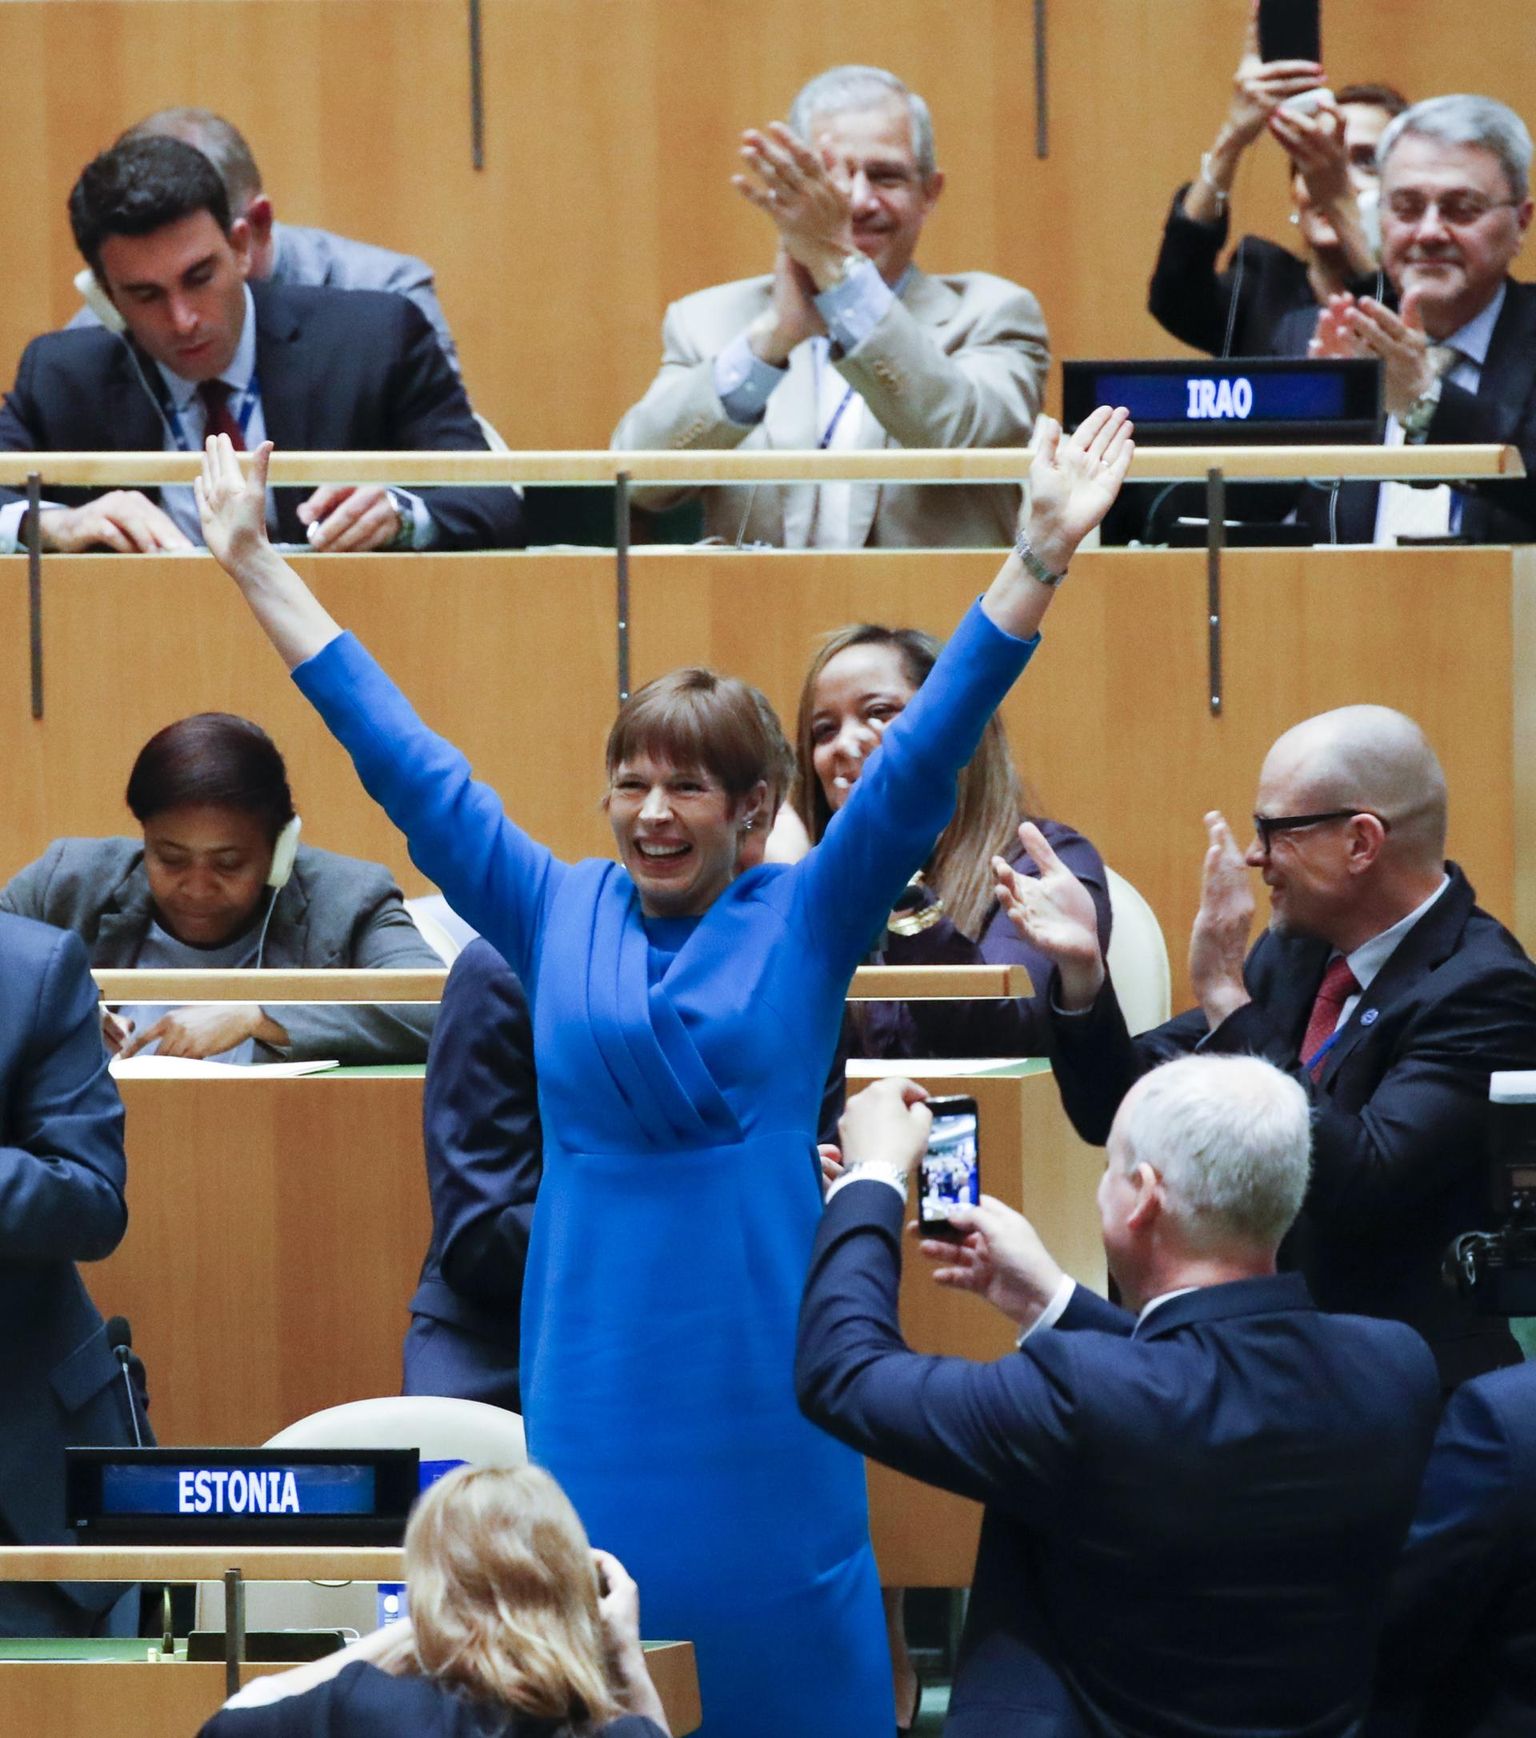 President rõõmustamas Eesti ÜRO Julgeolekunõukogu mittealaliseks liikmeks valimise uudise järel 2019. aastal.